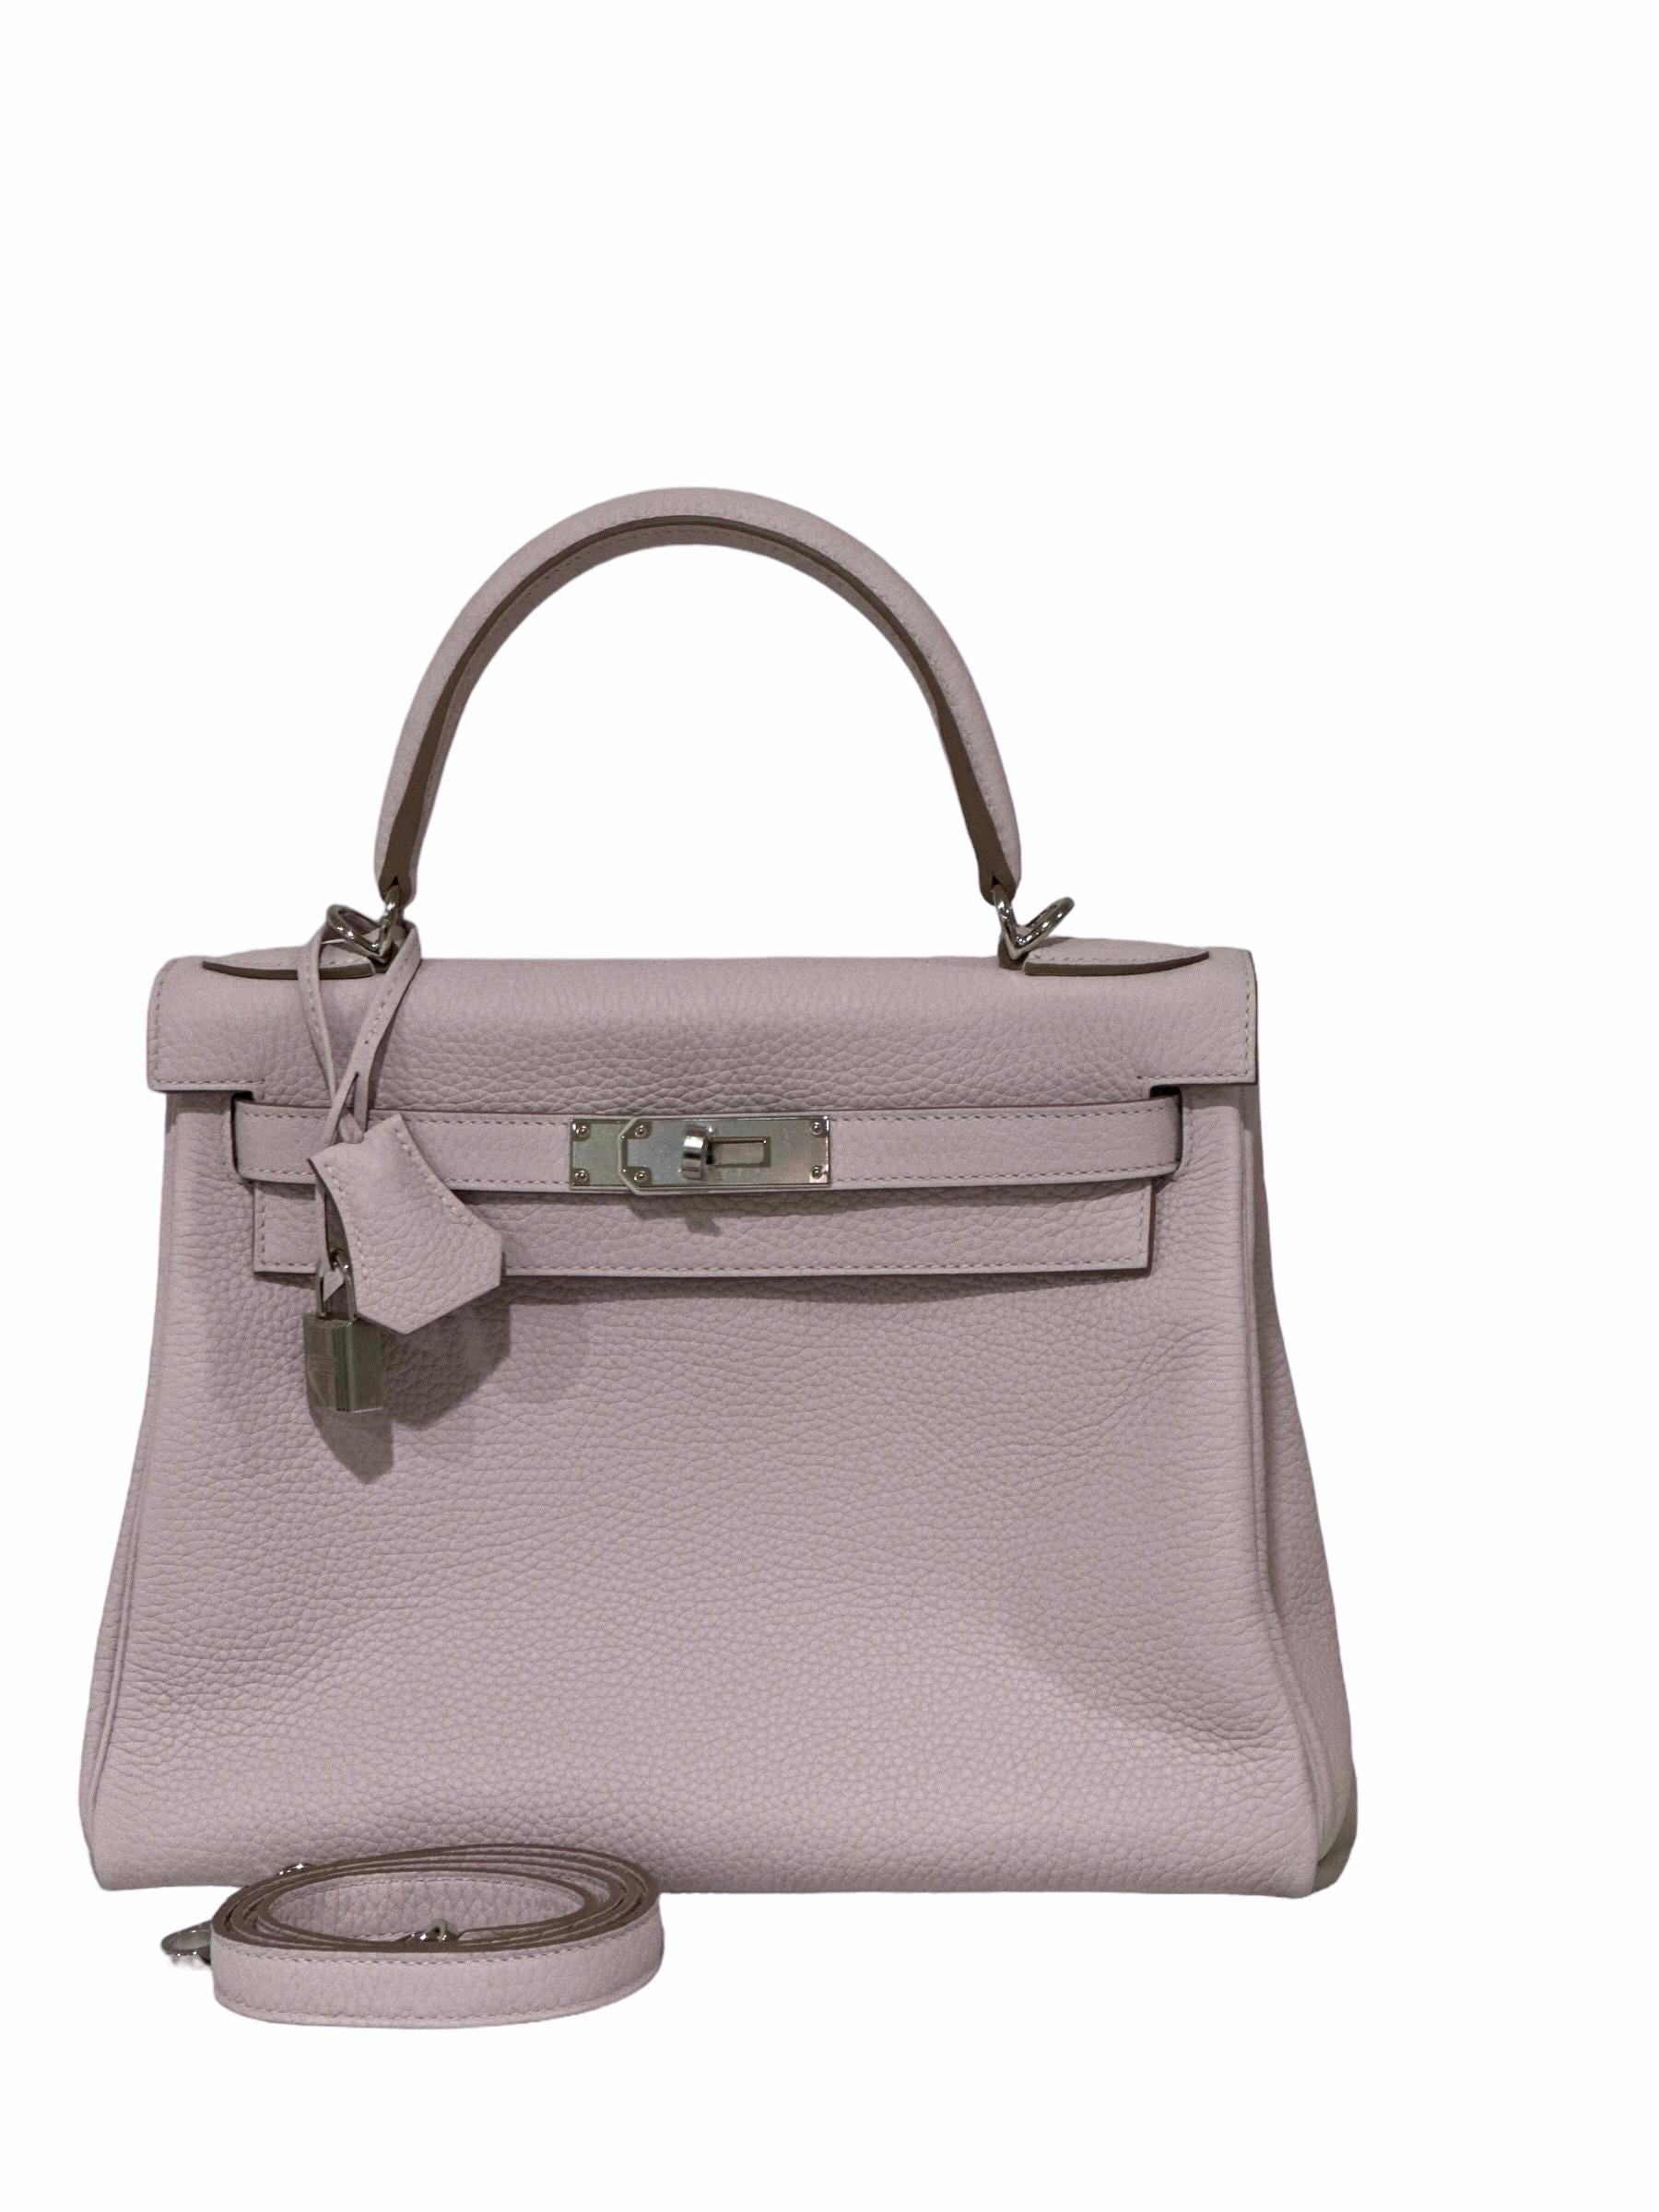 Le sac Kelly d'Hermès est un sac à main luxueux conçu par la maison de couture française Hermès. Il a été introduit pour la première fois dans les années 1930 en tant que sacoche pour les cavaliers, mais il est ensuite devenu un accessoire de mode